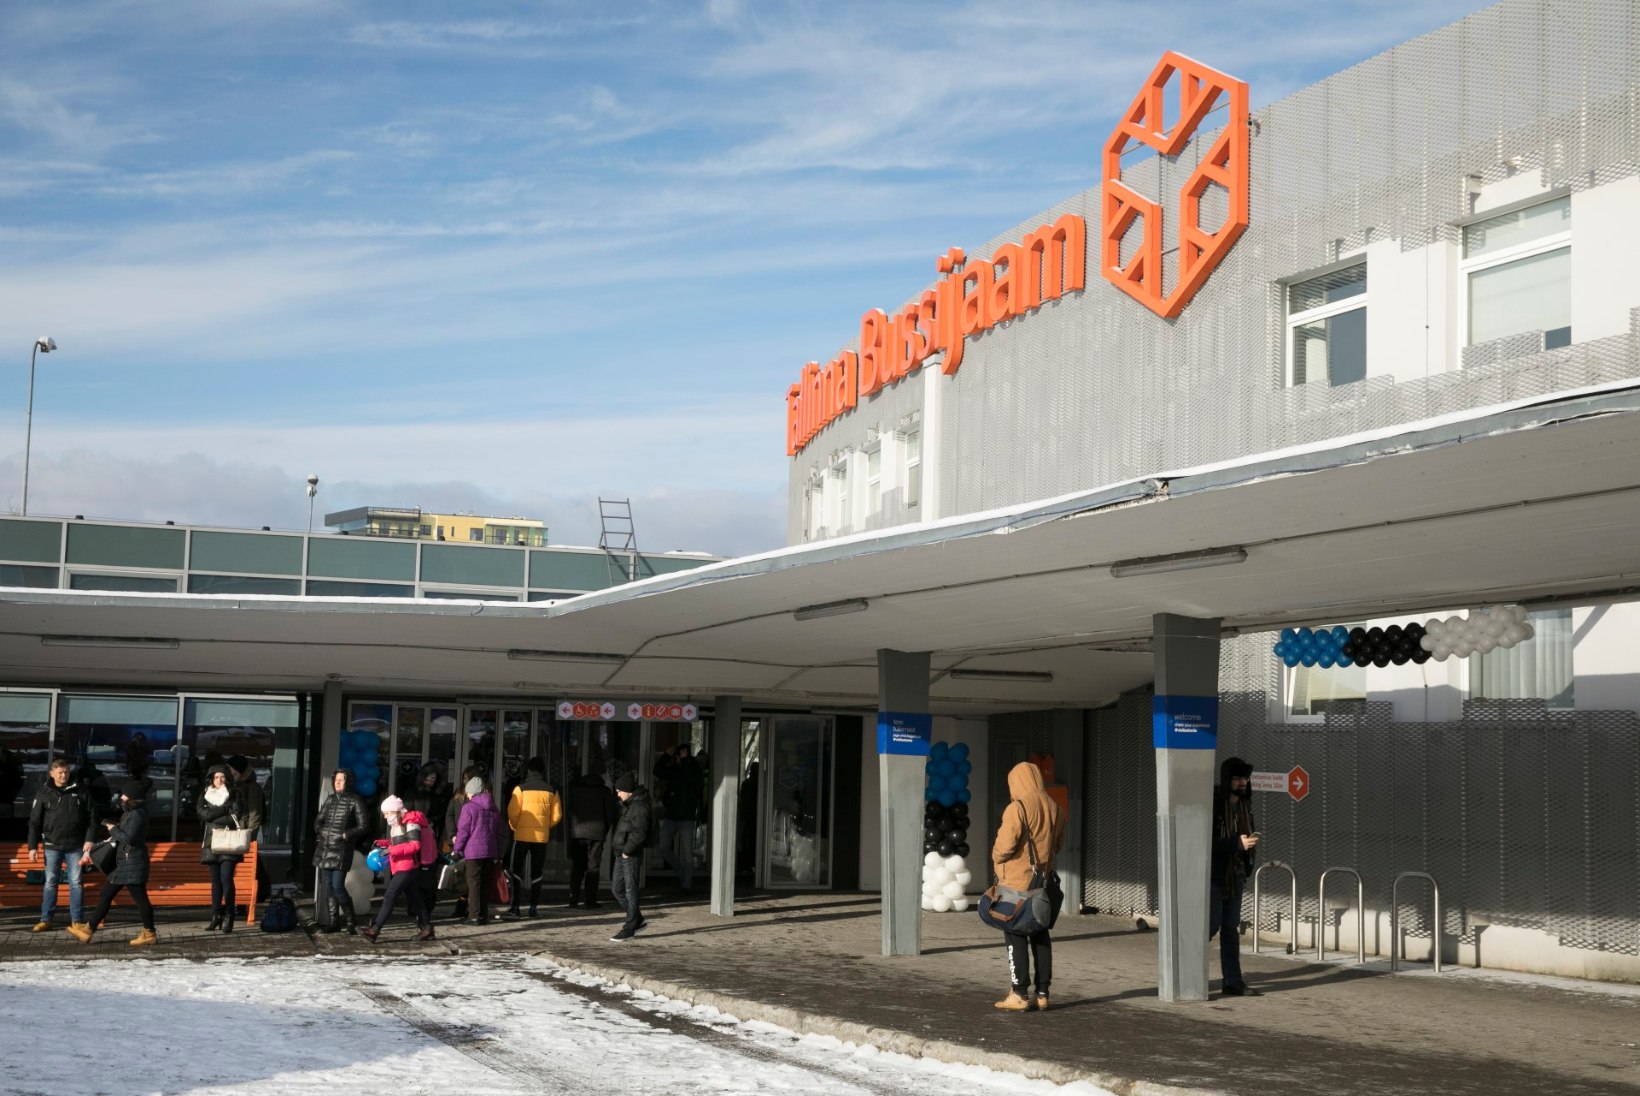 FOTOD | Tallinna bussijaam ehtis end sinimustvalgesse